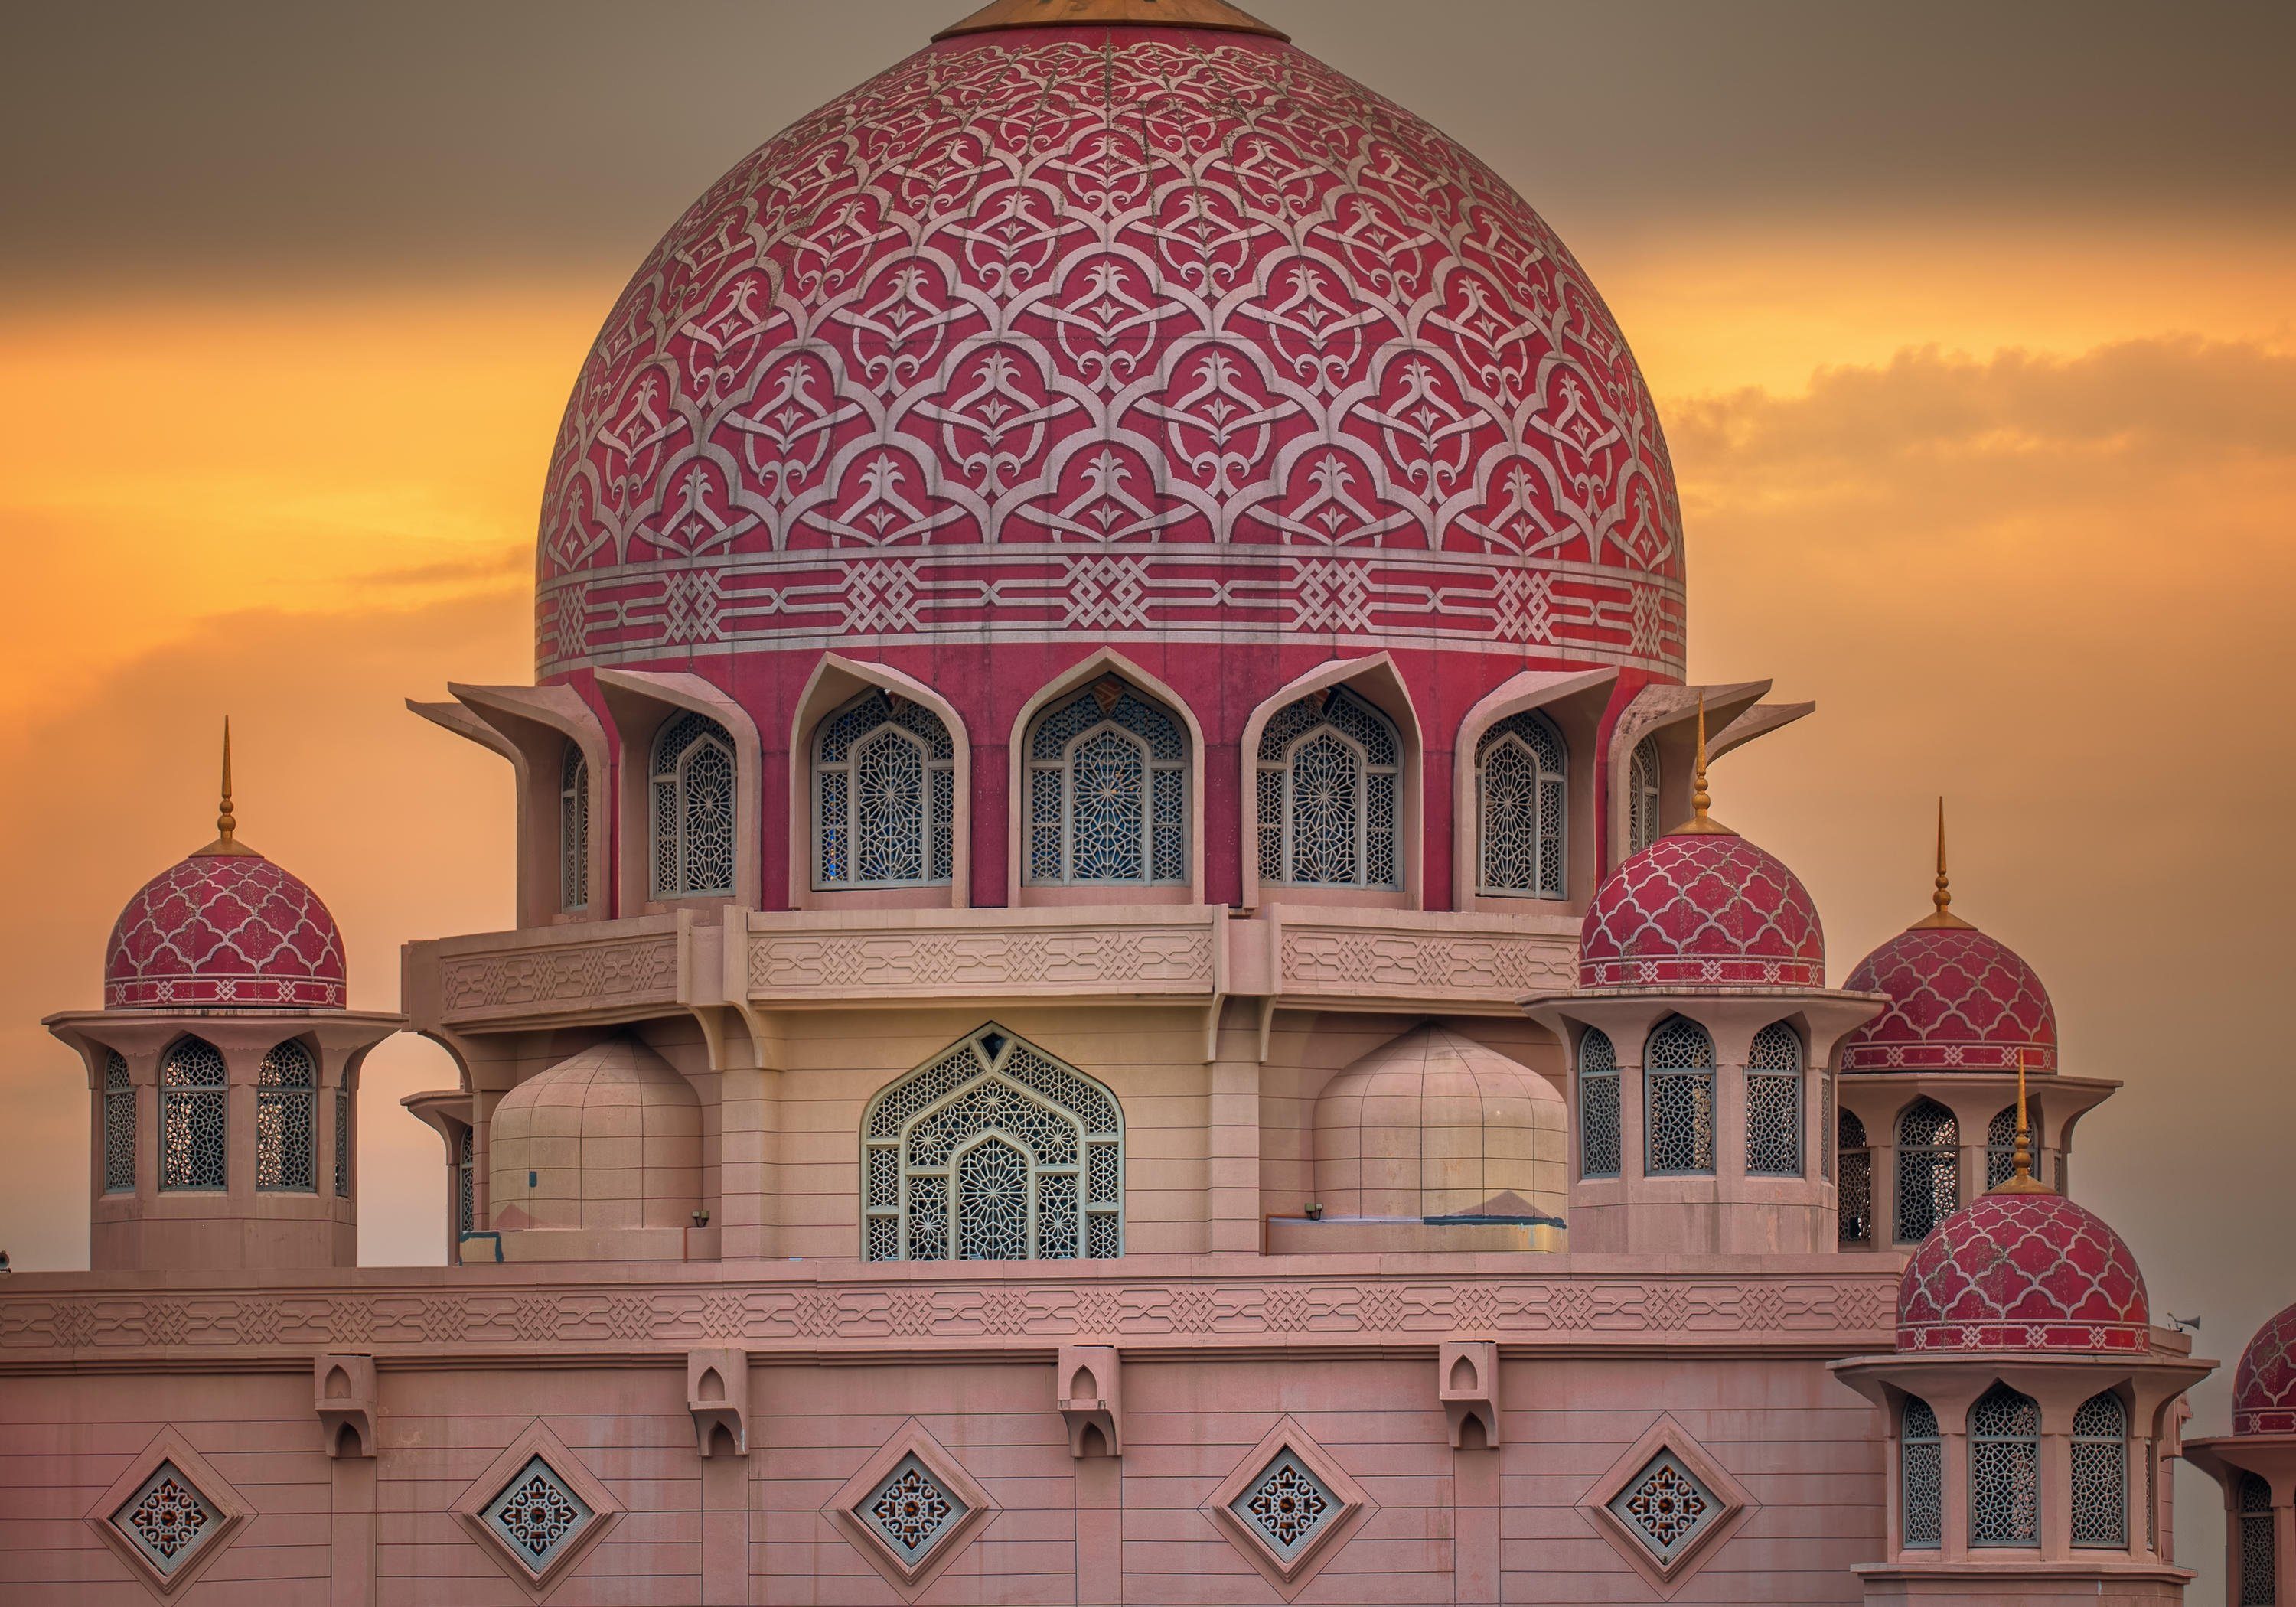 wandmotiv24 Fototapete Sonnenuntergang über Putrajaya-Moschee, glatt, Wandtapete, Motivtapete, matt, Vliestapete